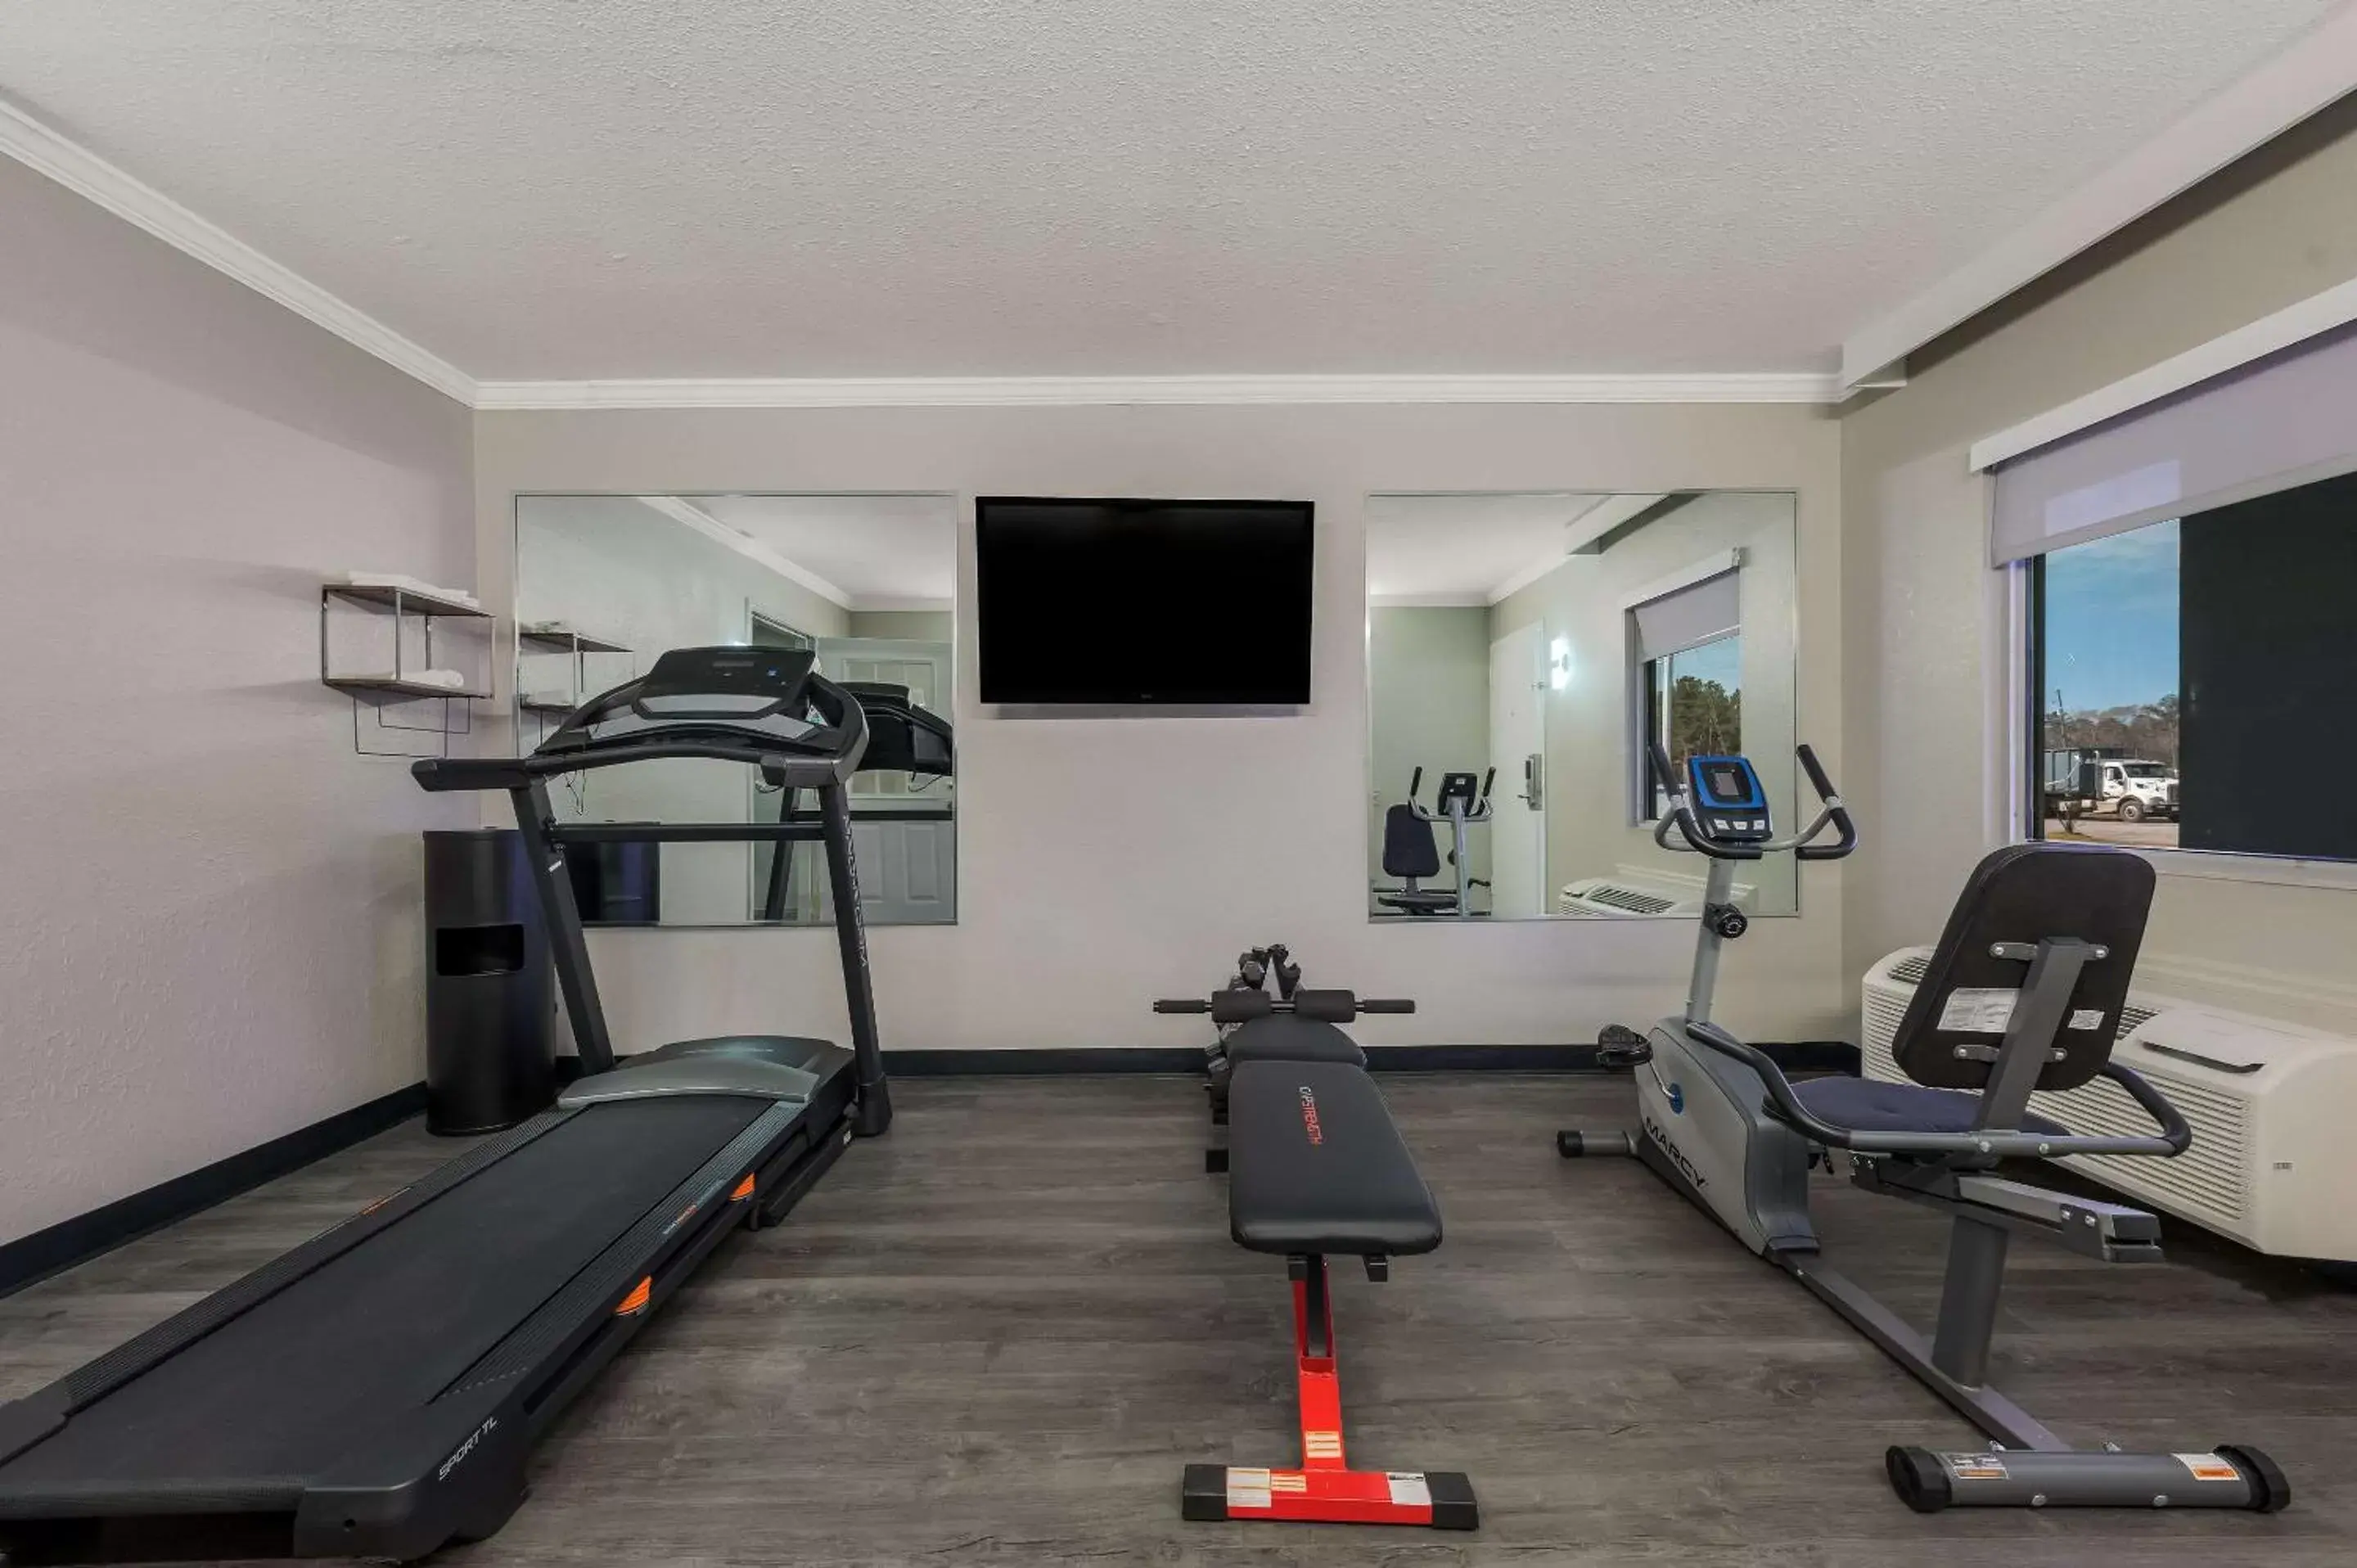 Fitness centre/facilities, Fitness Center/Facilities in Quality Inn Gadsden - Attalla